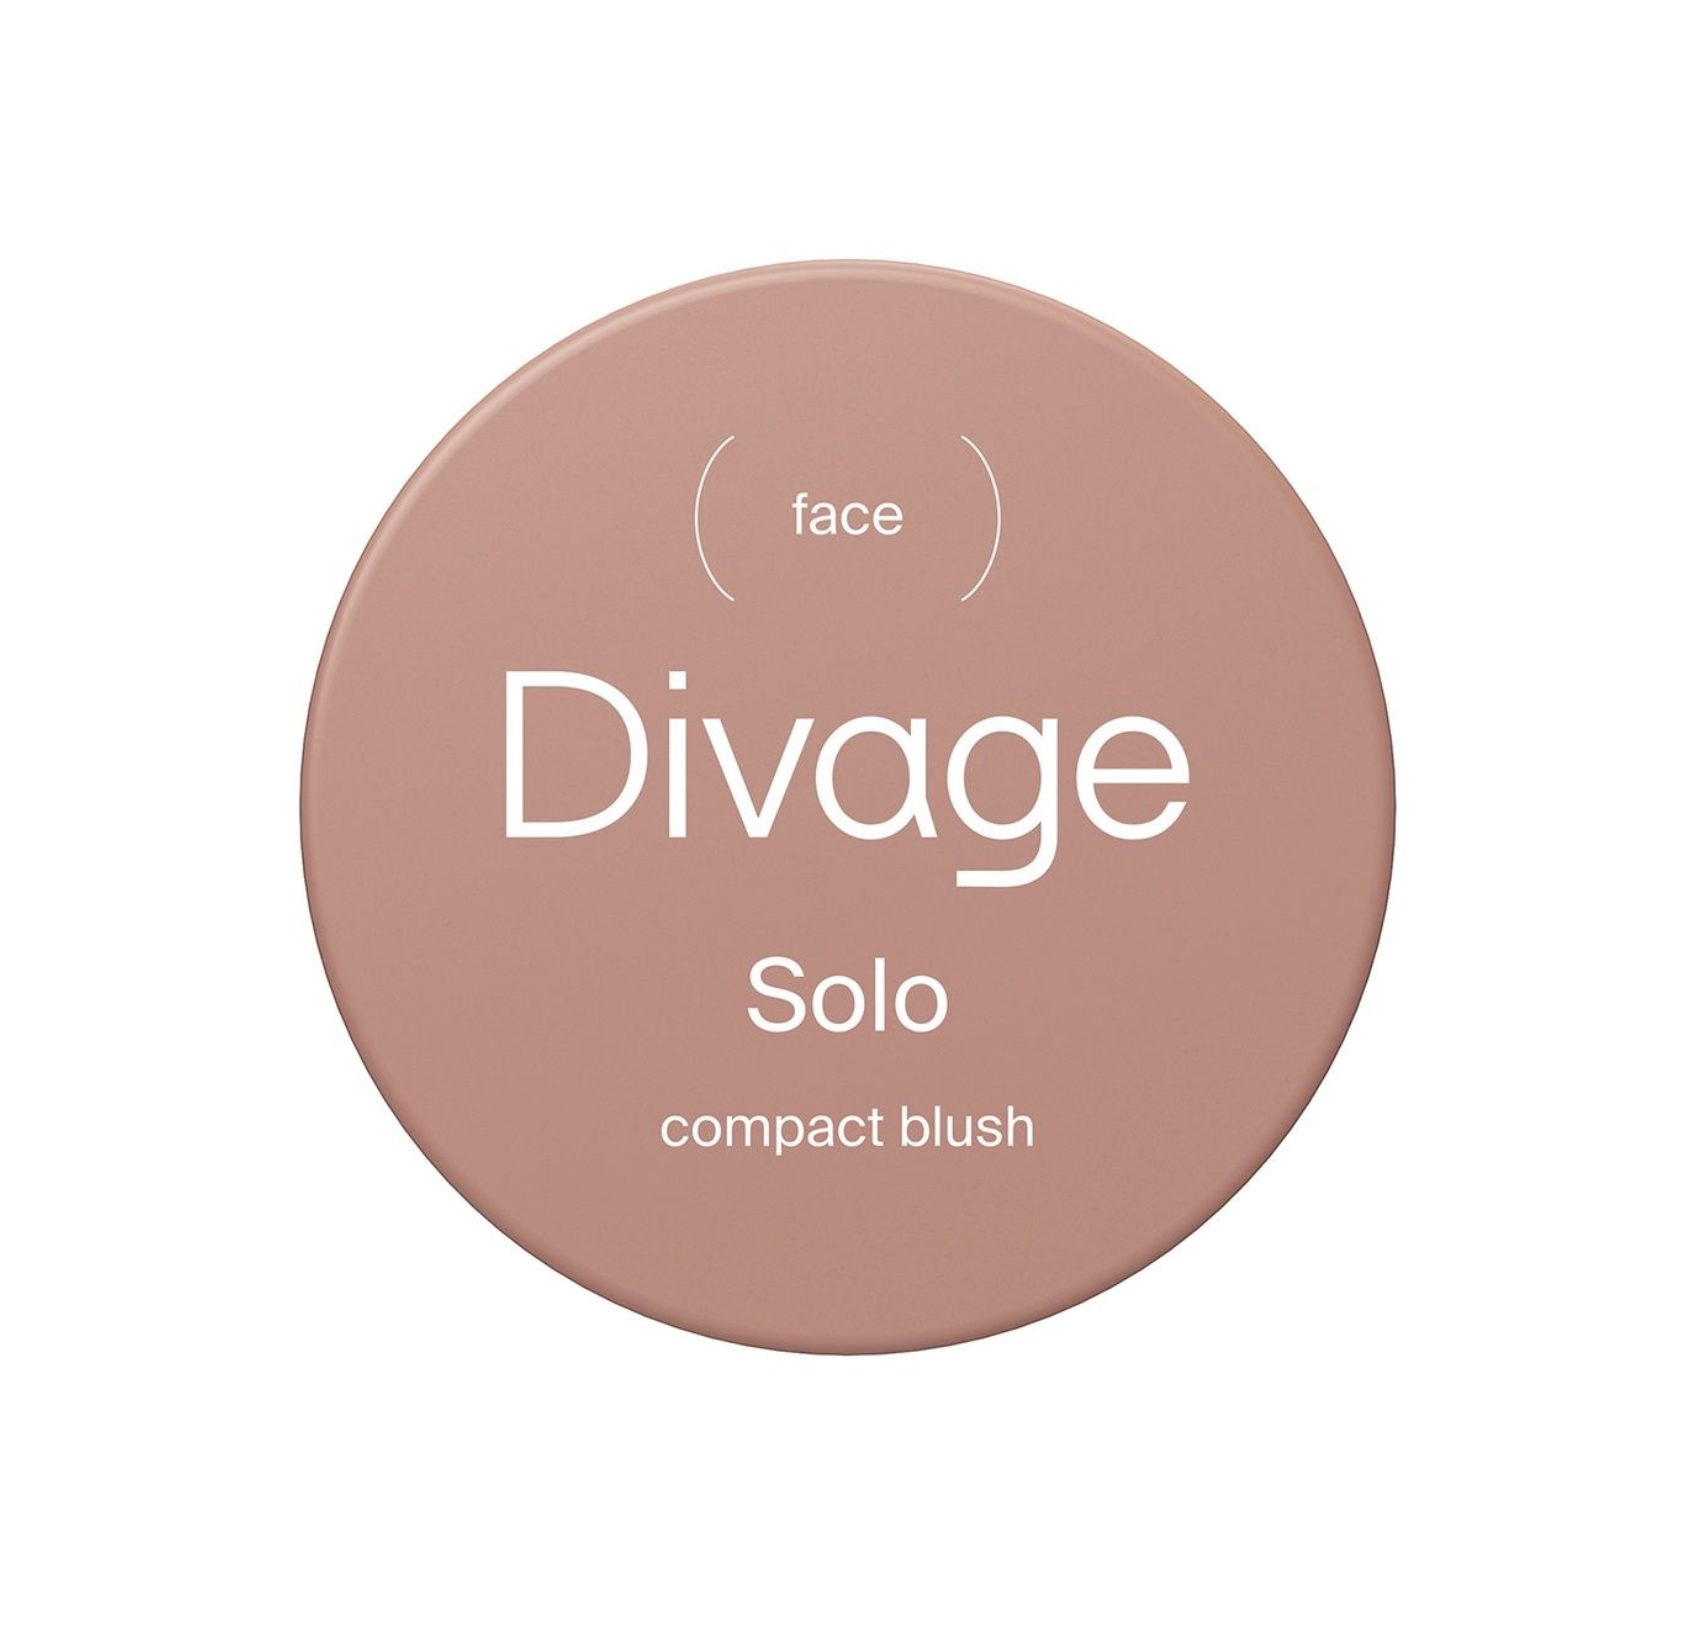   / Divage -     Solo compact blush  06, 2 